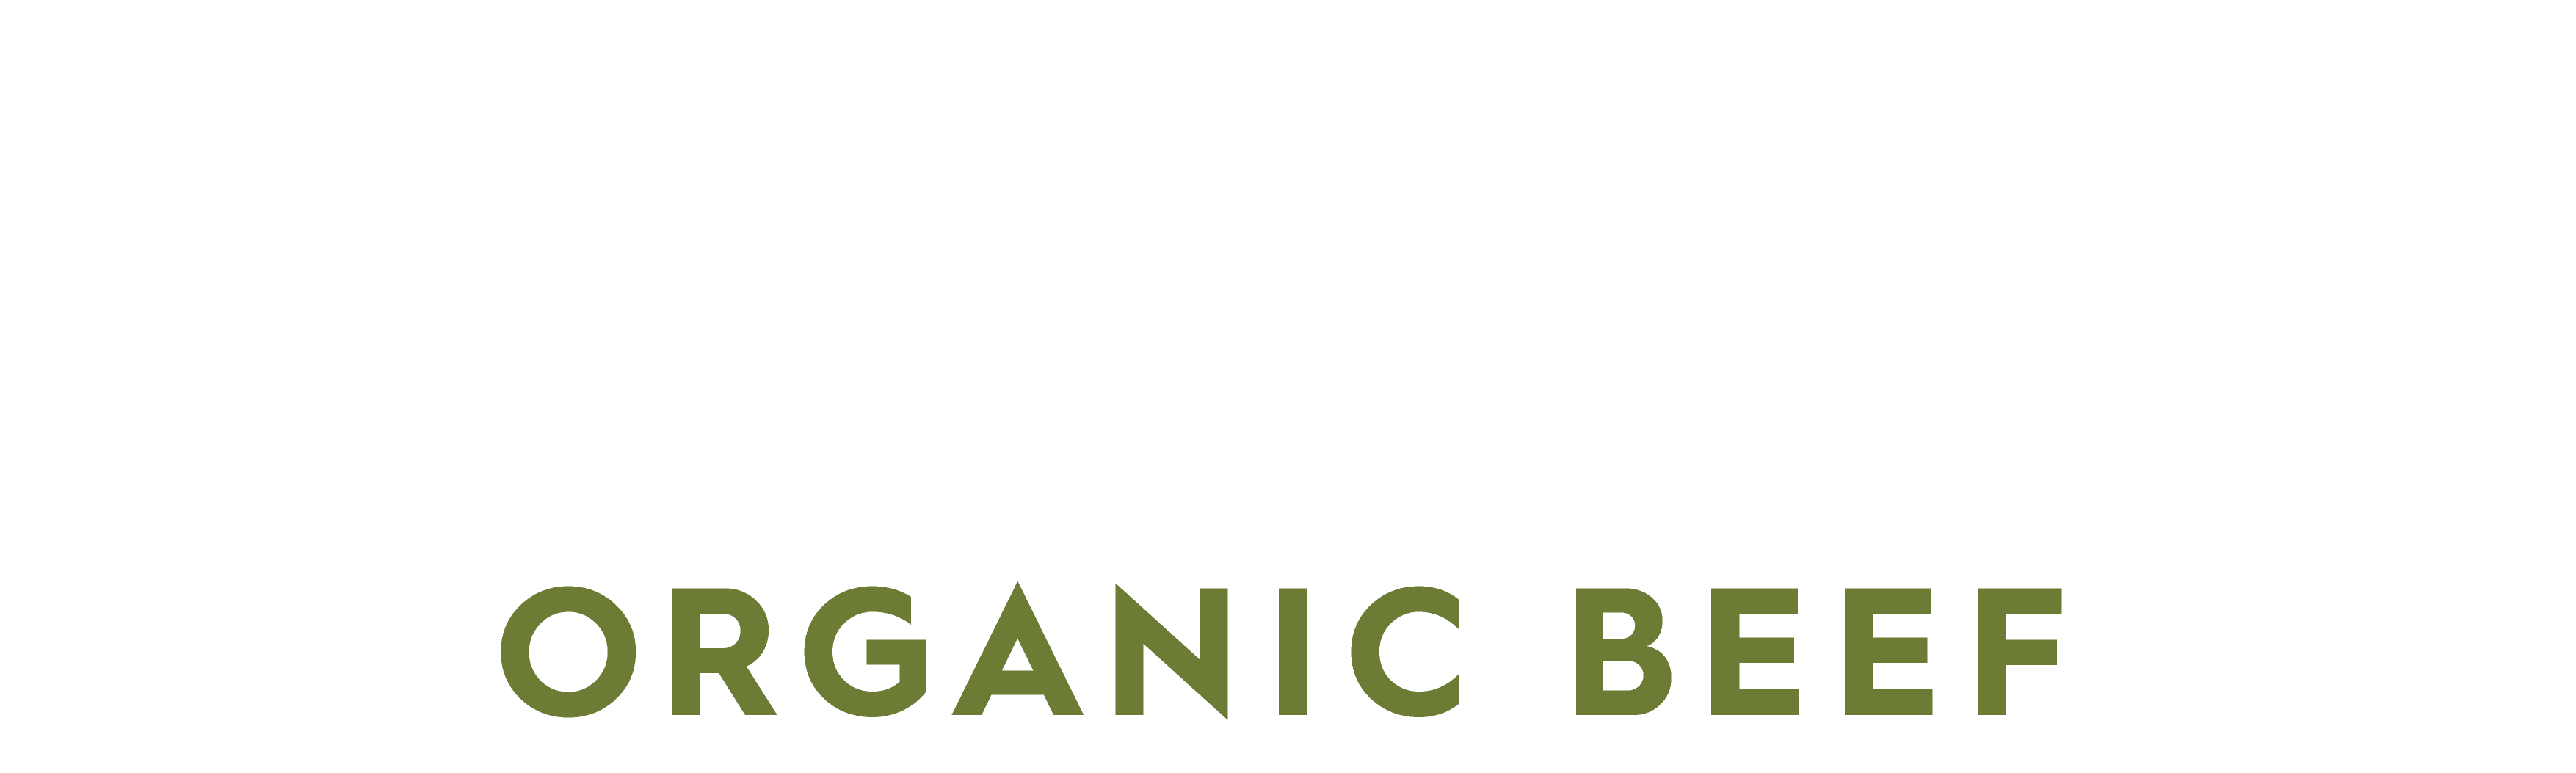 Diamantina Organic Beef logo